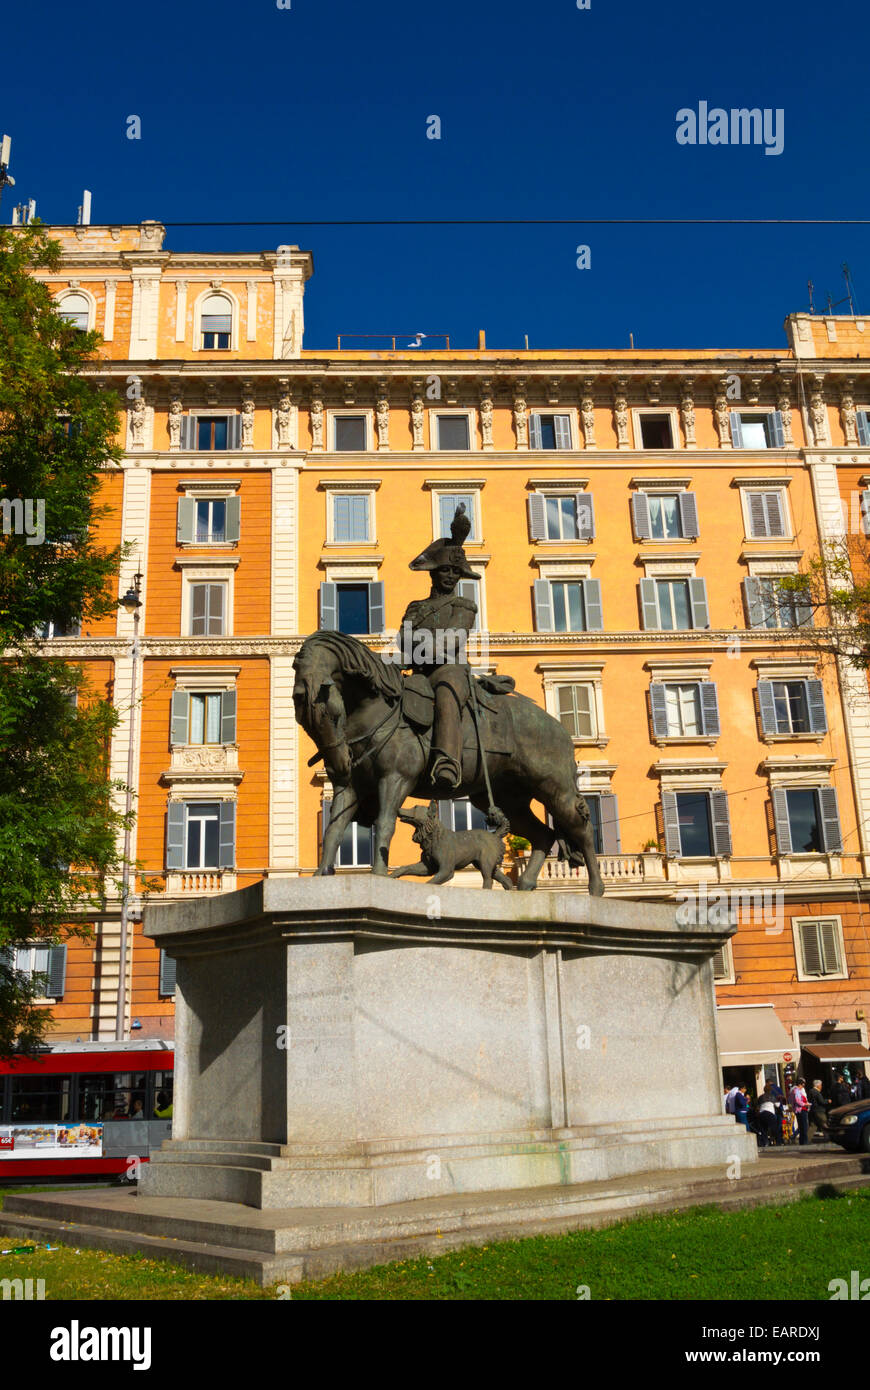 Monument to Carabinieri, Piazza del Risorgimento, Borgo district, Rome, Italy Stock Photo